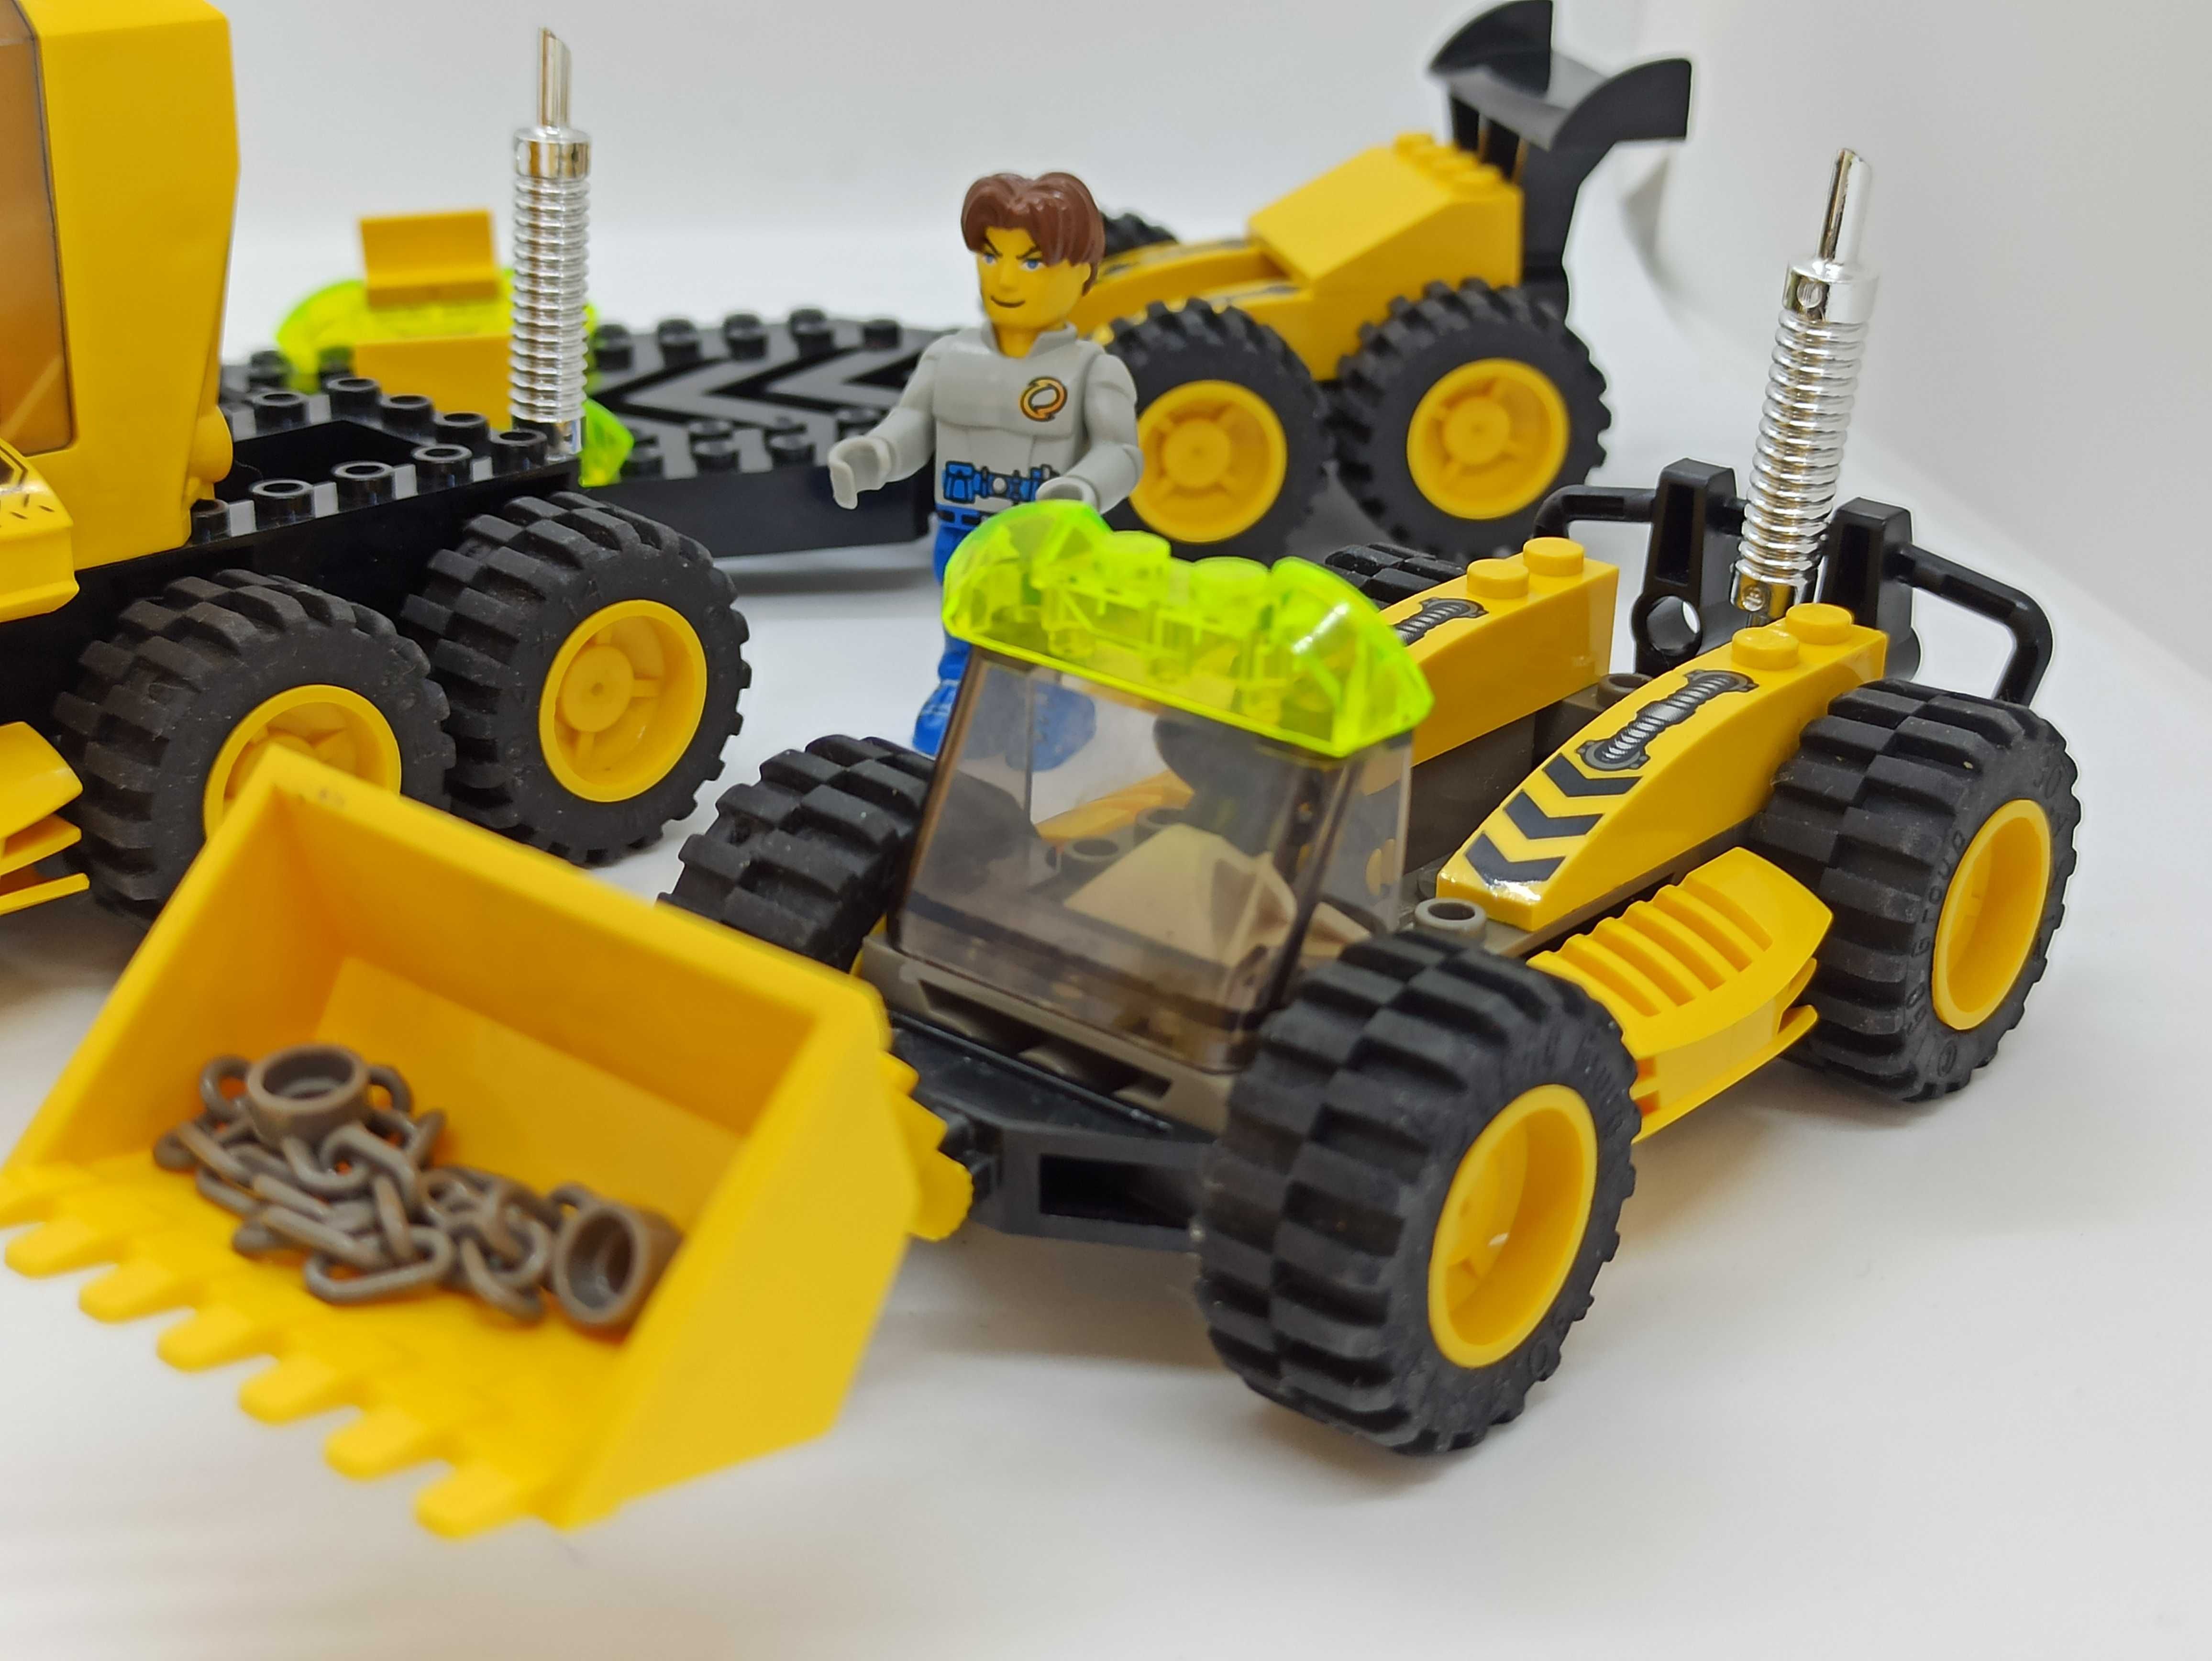 Lego 4622 ResQ Digger (Res-Q)